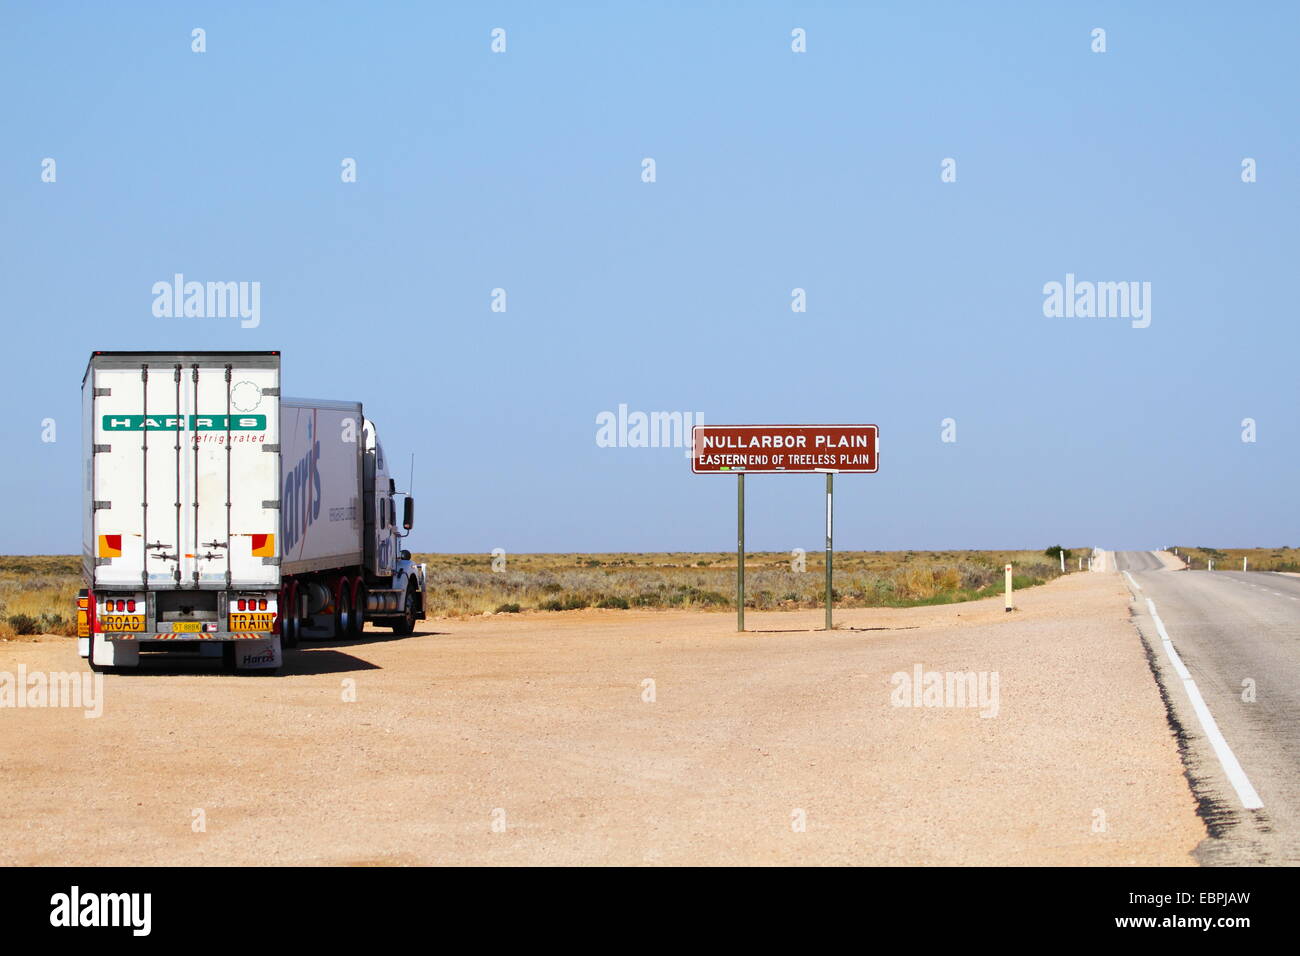 Ein Lkw gestoppt durch den Eyre Highway Schild informiert über das östliche Ende des baumlose Ebene, die Nullarbor Plain, South Australia. Stockfoto